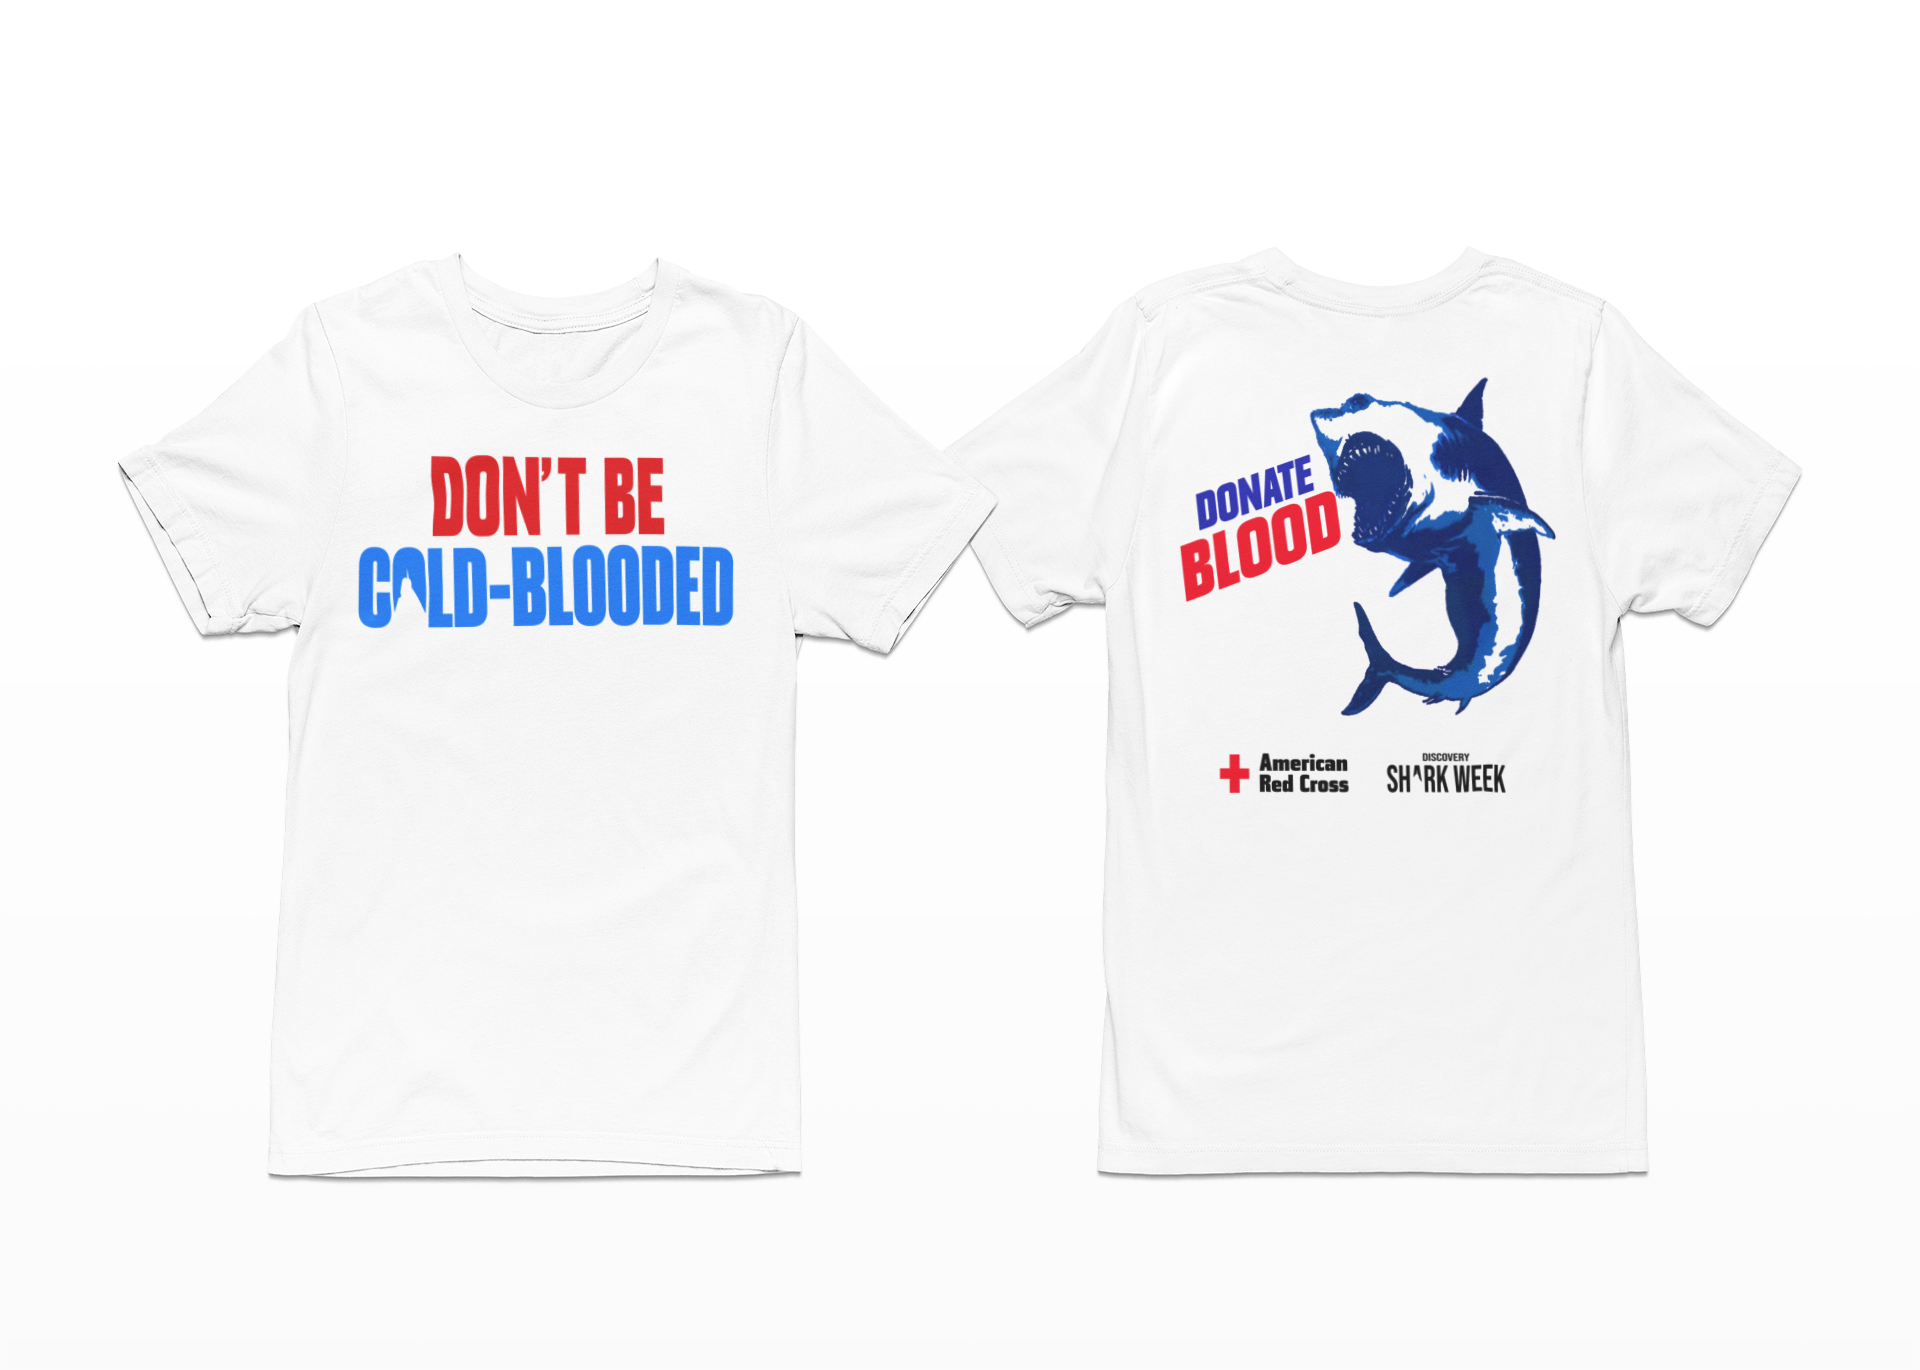 2023 Red Cross Shark Week Shirt, Hoodie, Sweatshirt, Women Tee Lelemoon